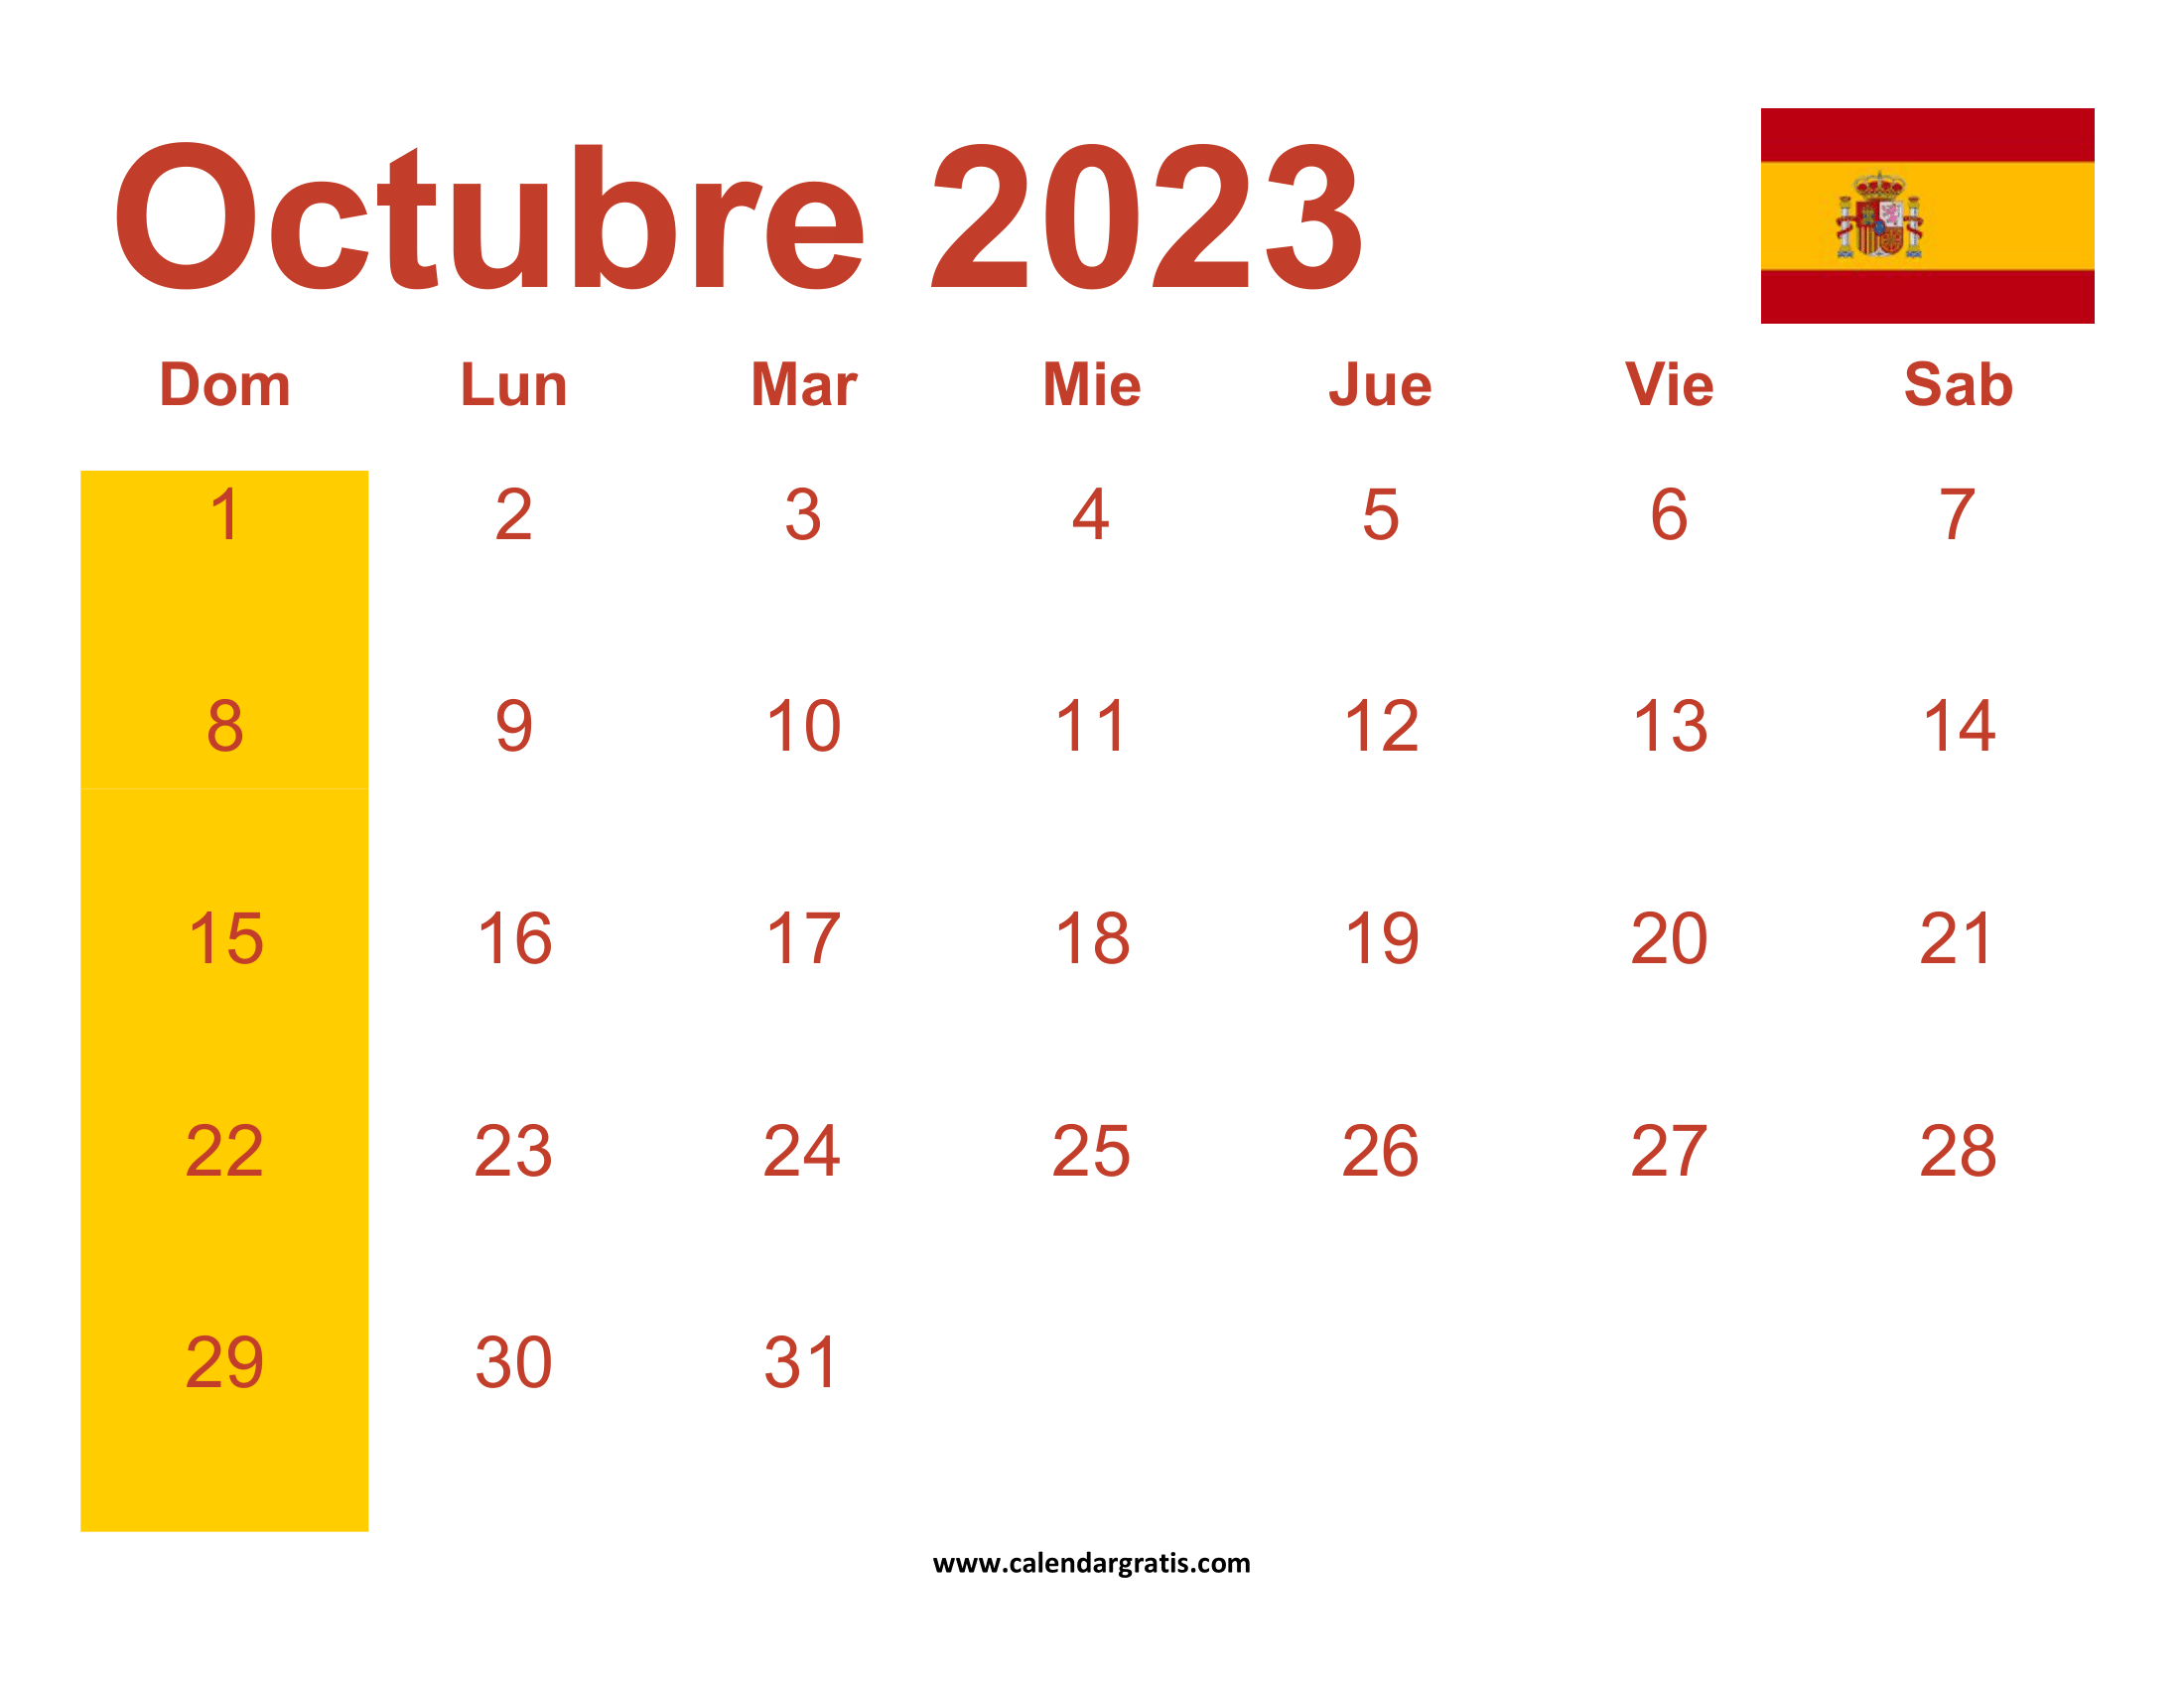 Calendario octubre 2023 españa gartis